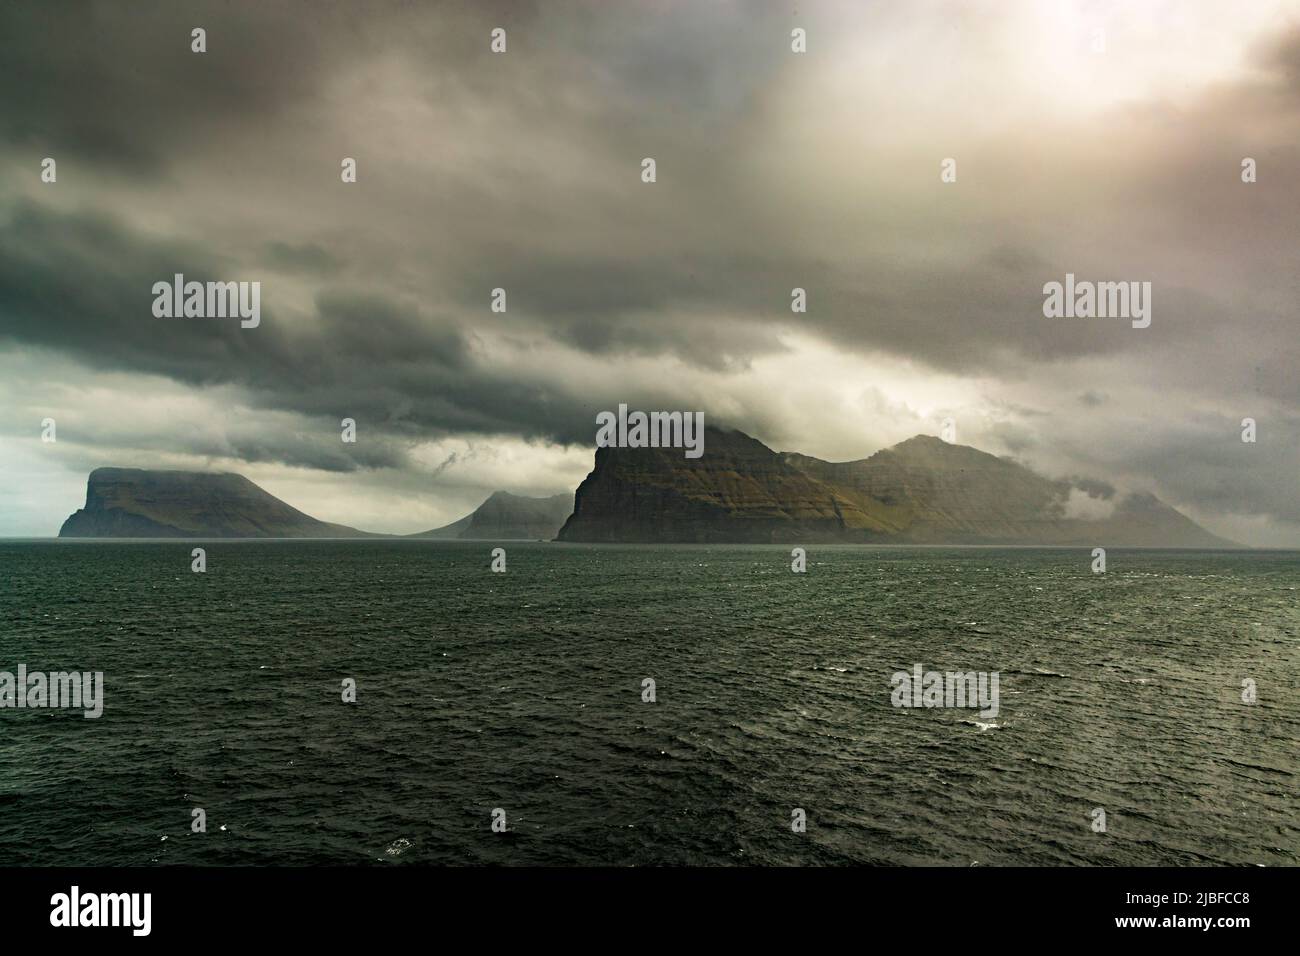 Faroe Islands in a storm Stock Photo